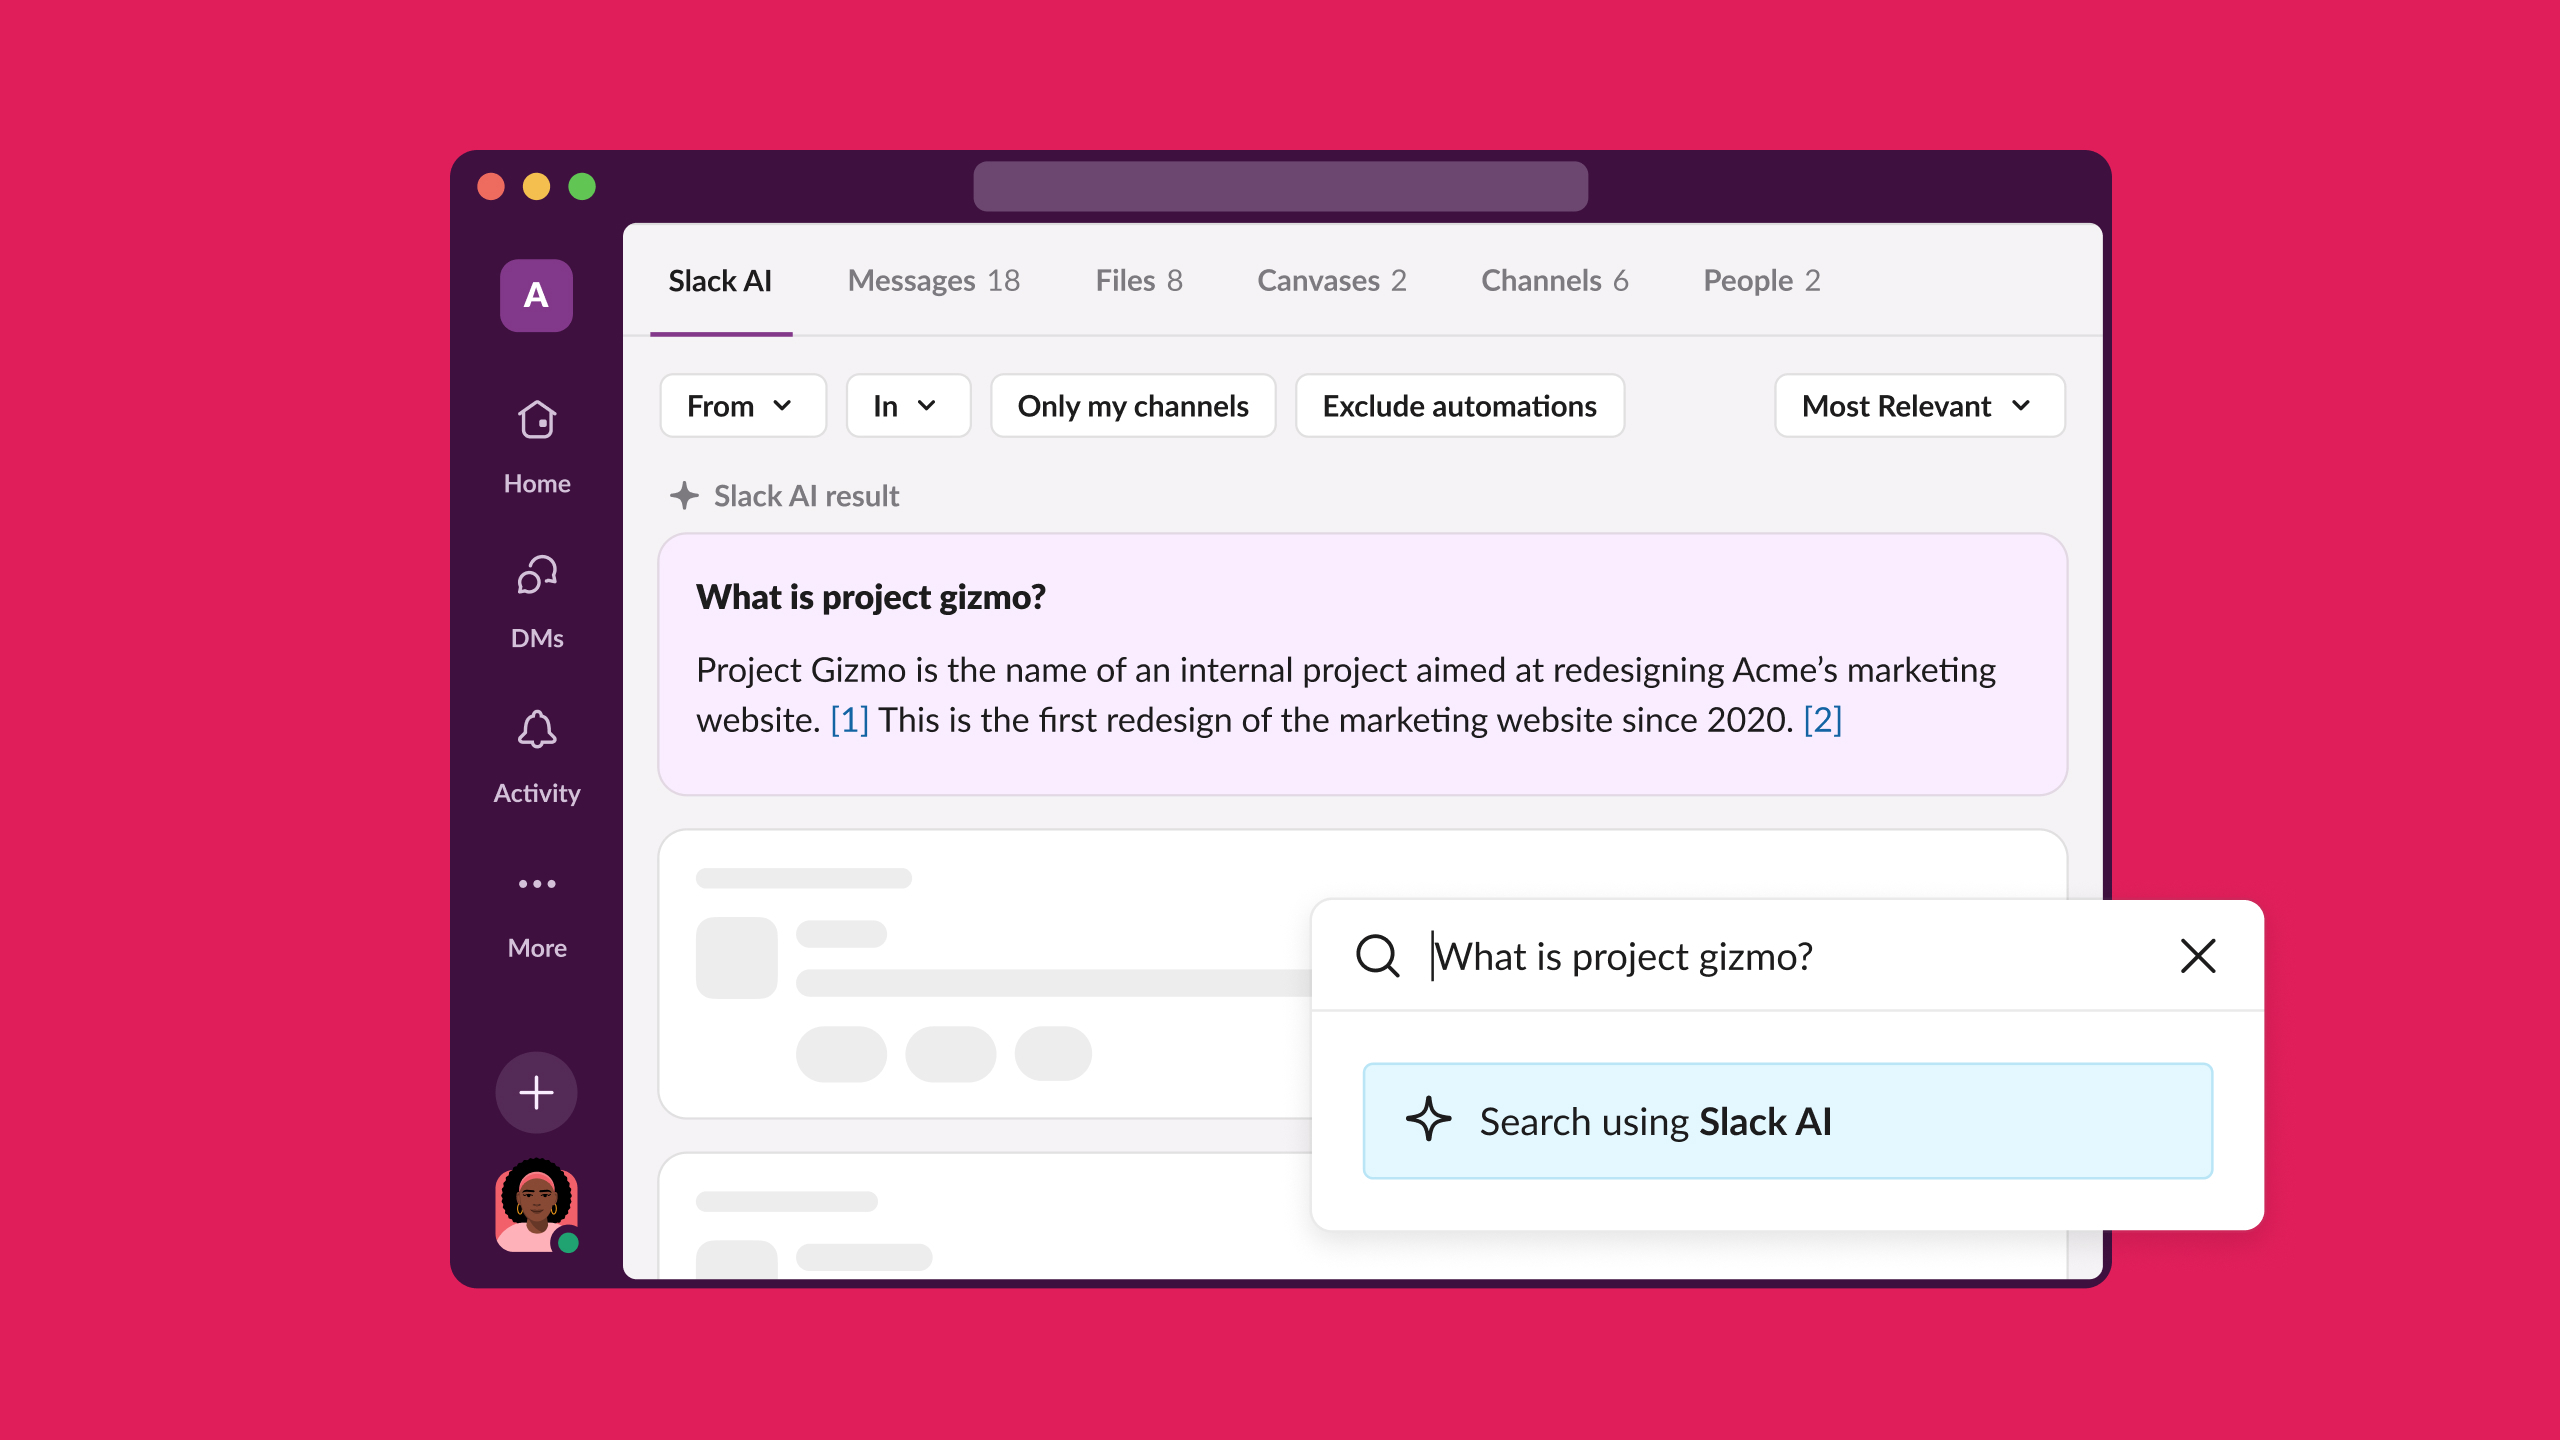 Slack-KI-Suche fragt, was ein Projekt-Gizmo ist, und gibt eine Antwort aus dem Slack-Antwortarchiv.